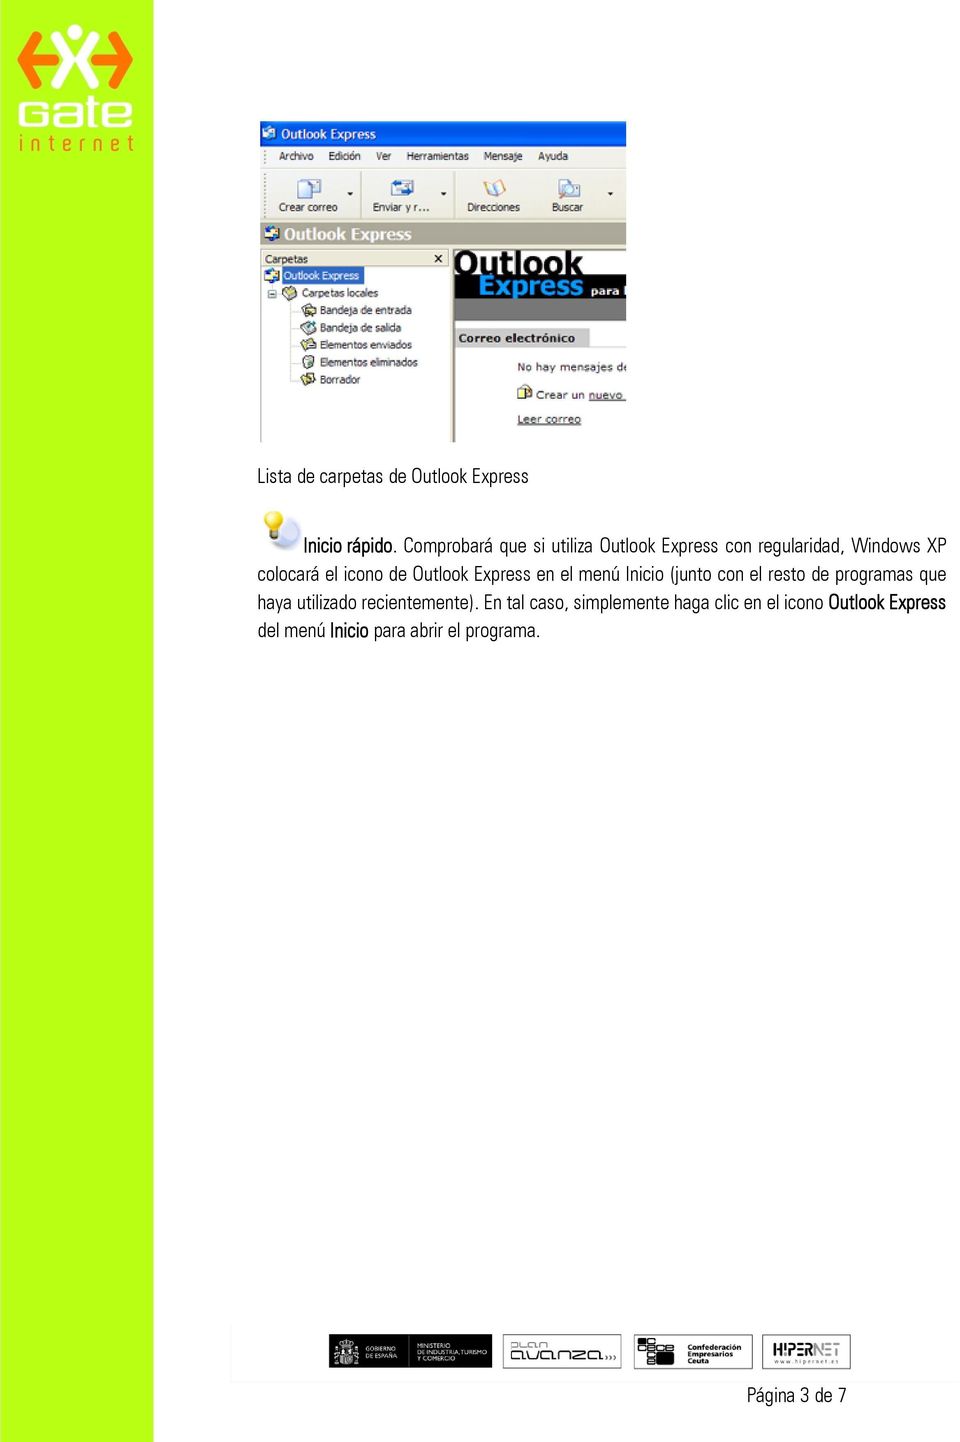 Outlook Express en el menú Inicio (junto con el resto de programas que haya utilizado